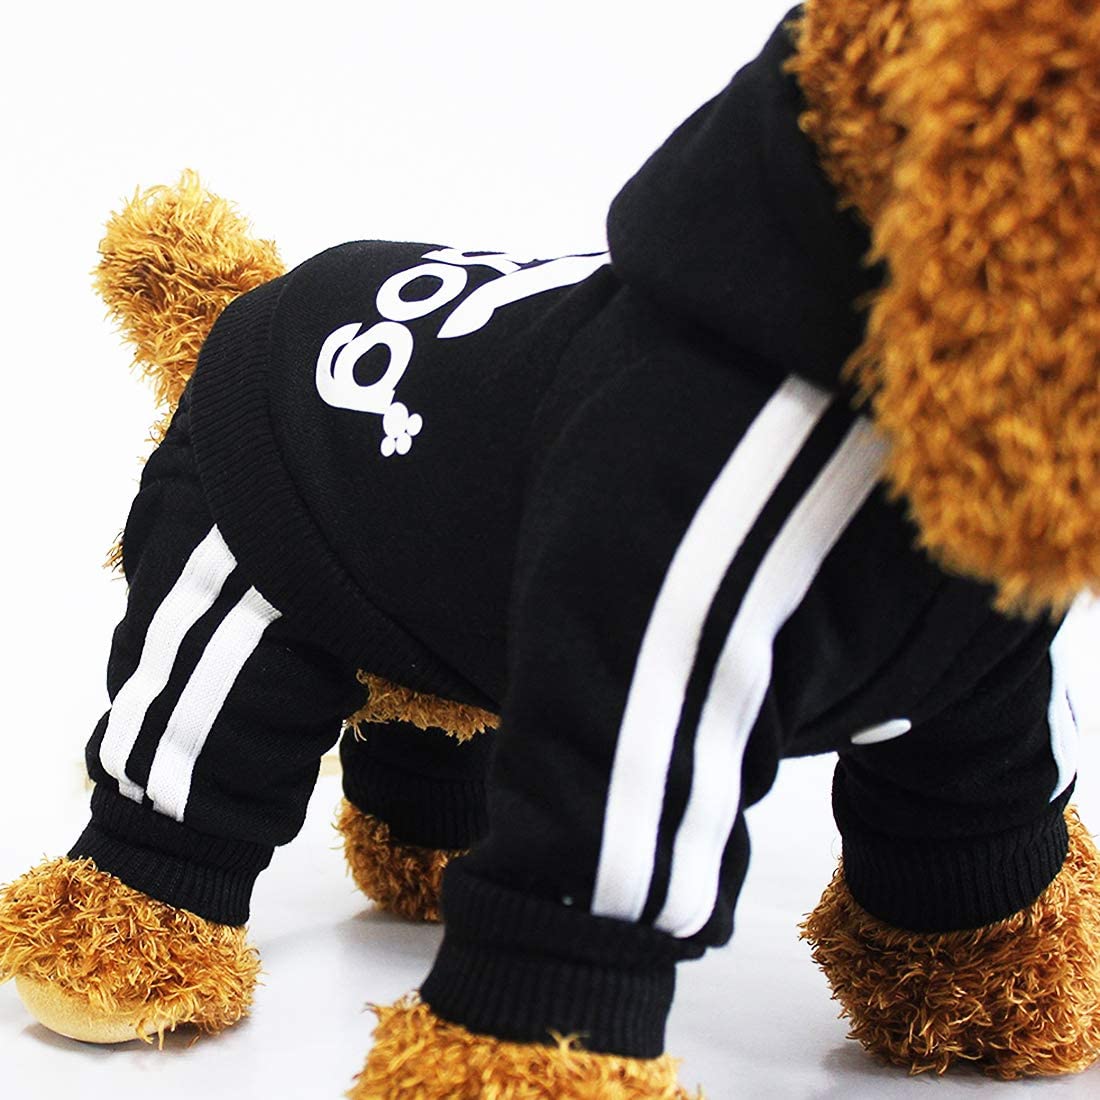  Animales Ropa - Pet Costume Ropa Para Perros Perrito Sudadera Con Capucha Pullover, Negro Medium 